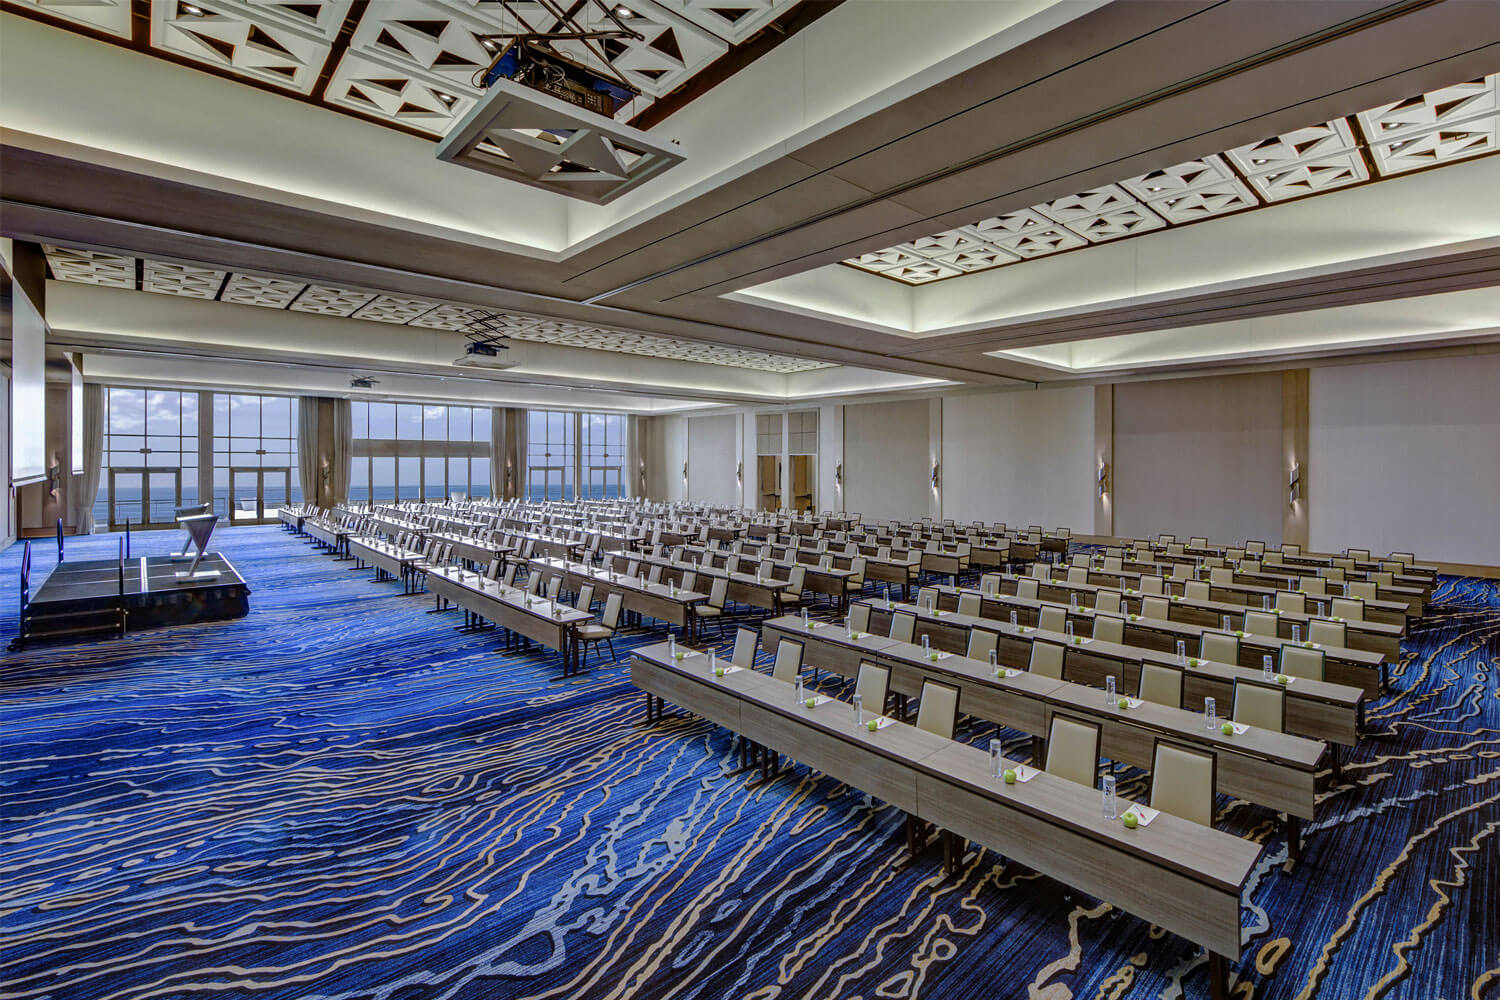 Marriott Seaside Ballroom set up for an event